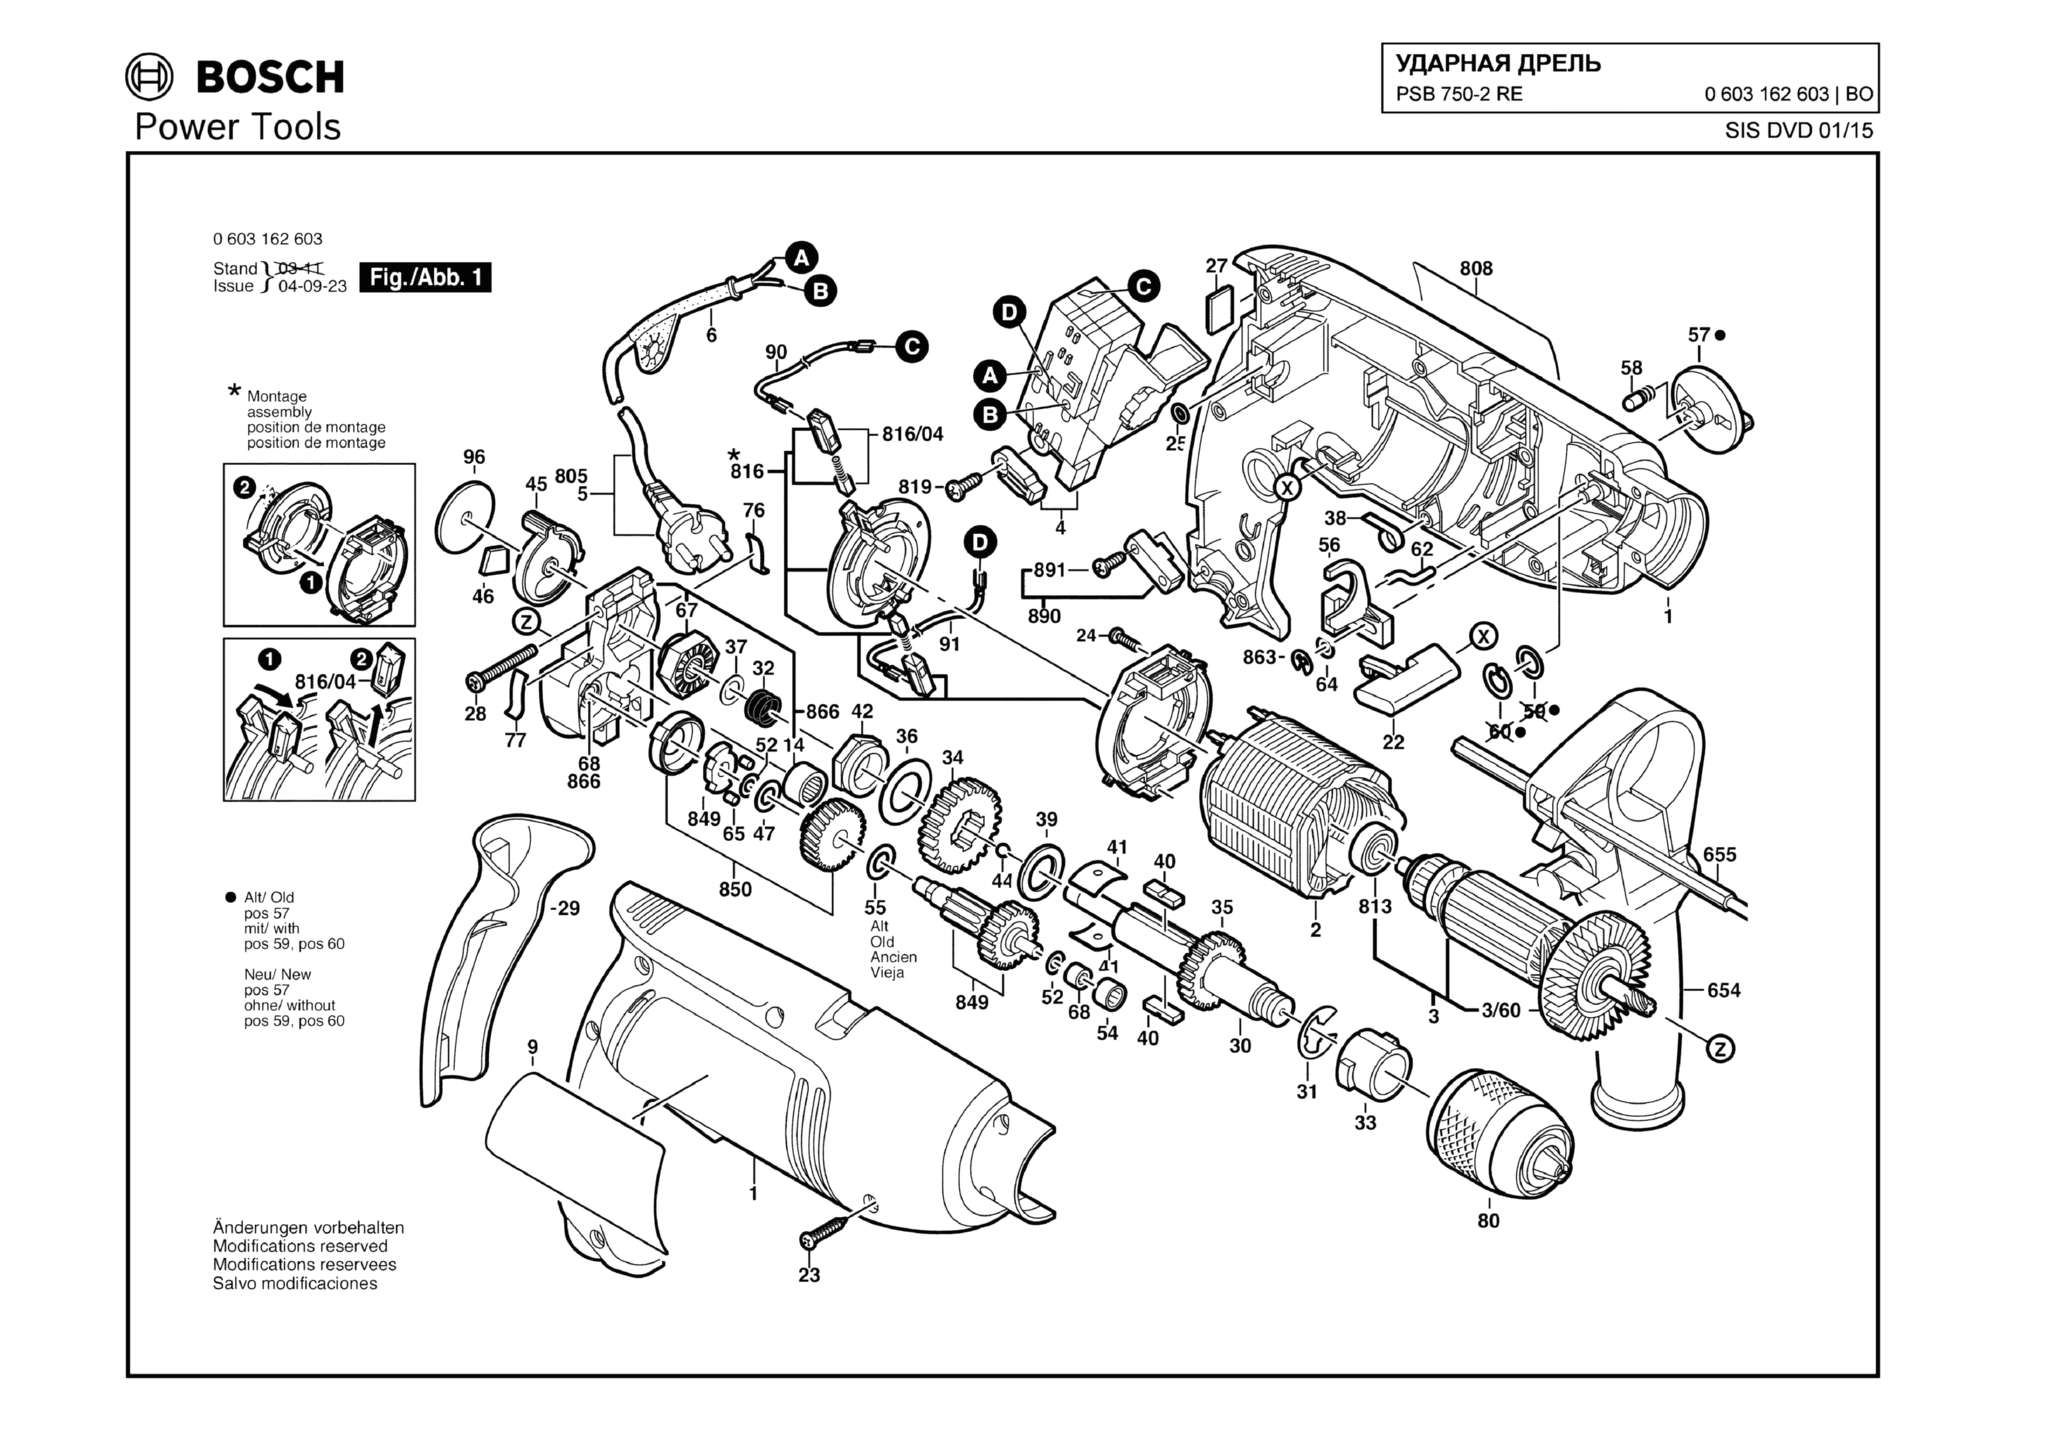 Запчасти, схема и деталировка Bosch PSB 750-2 RE (ТИП 0603162603)